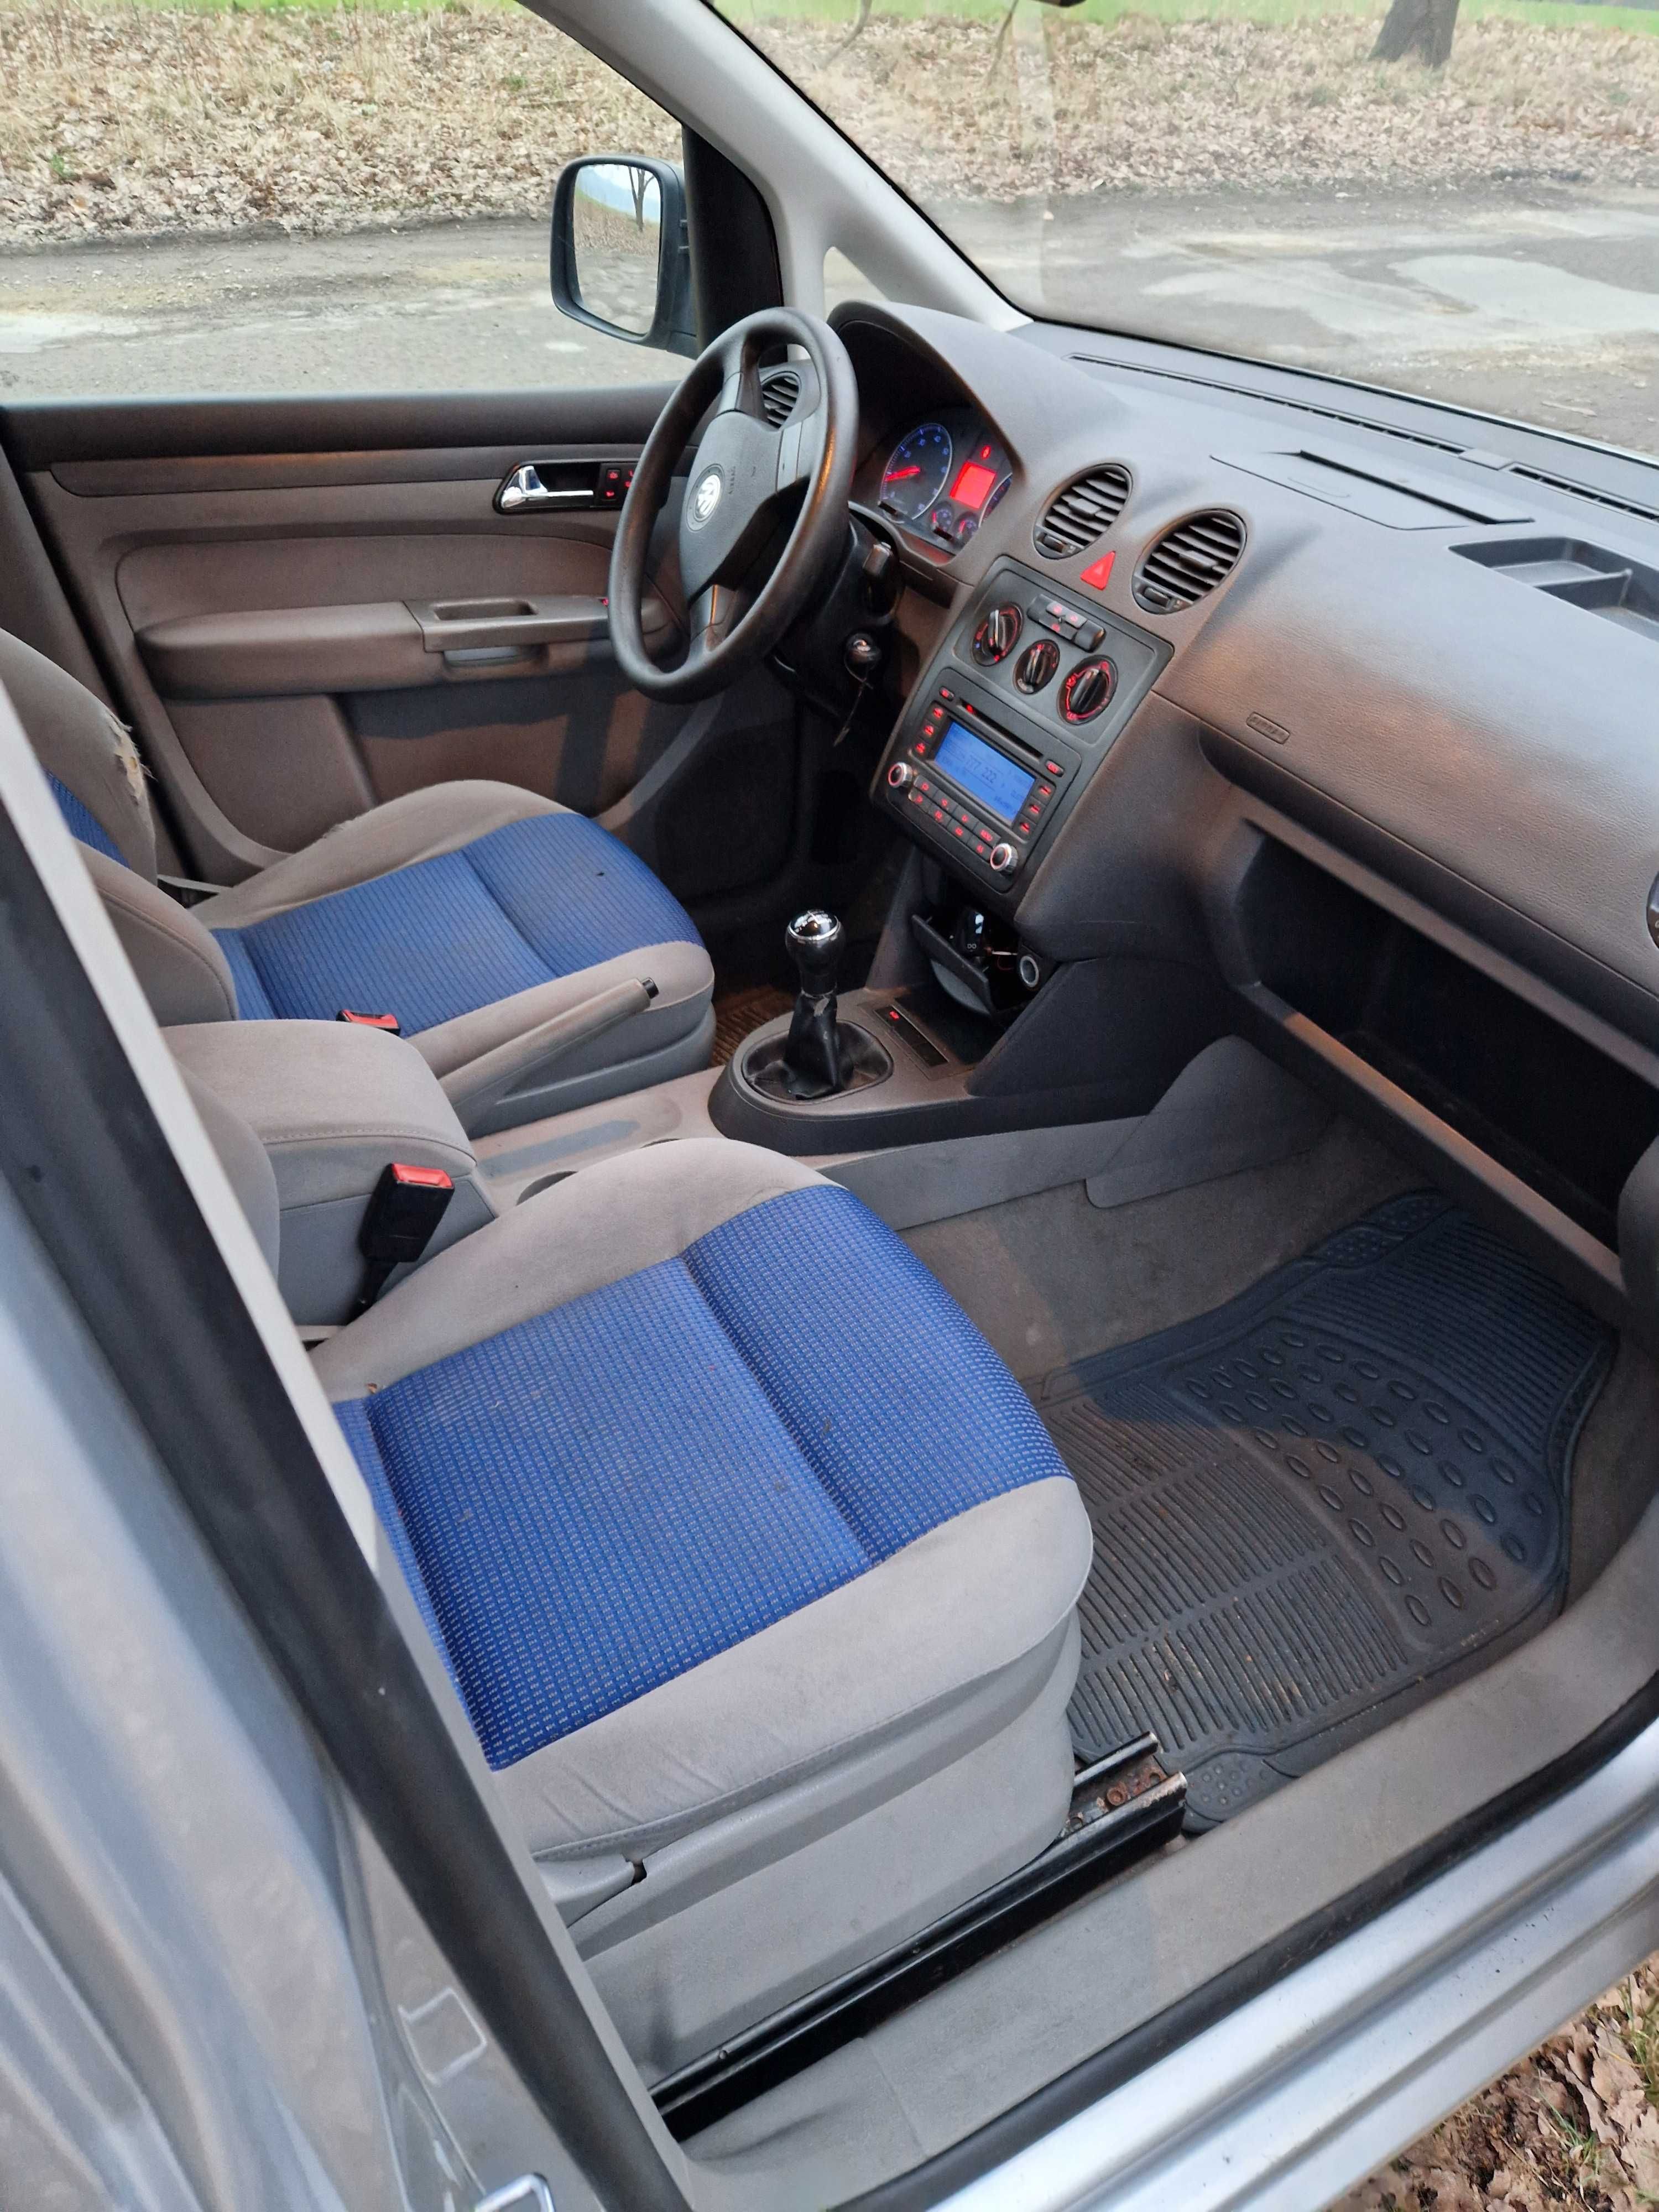 Volkswagen Caddy 1.4 ekonomiczny i dynamiczny klima